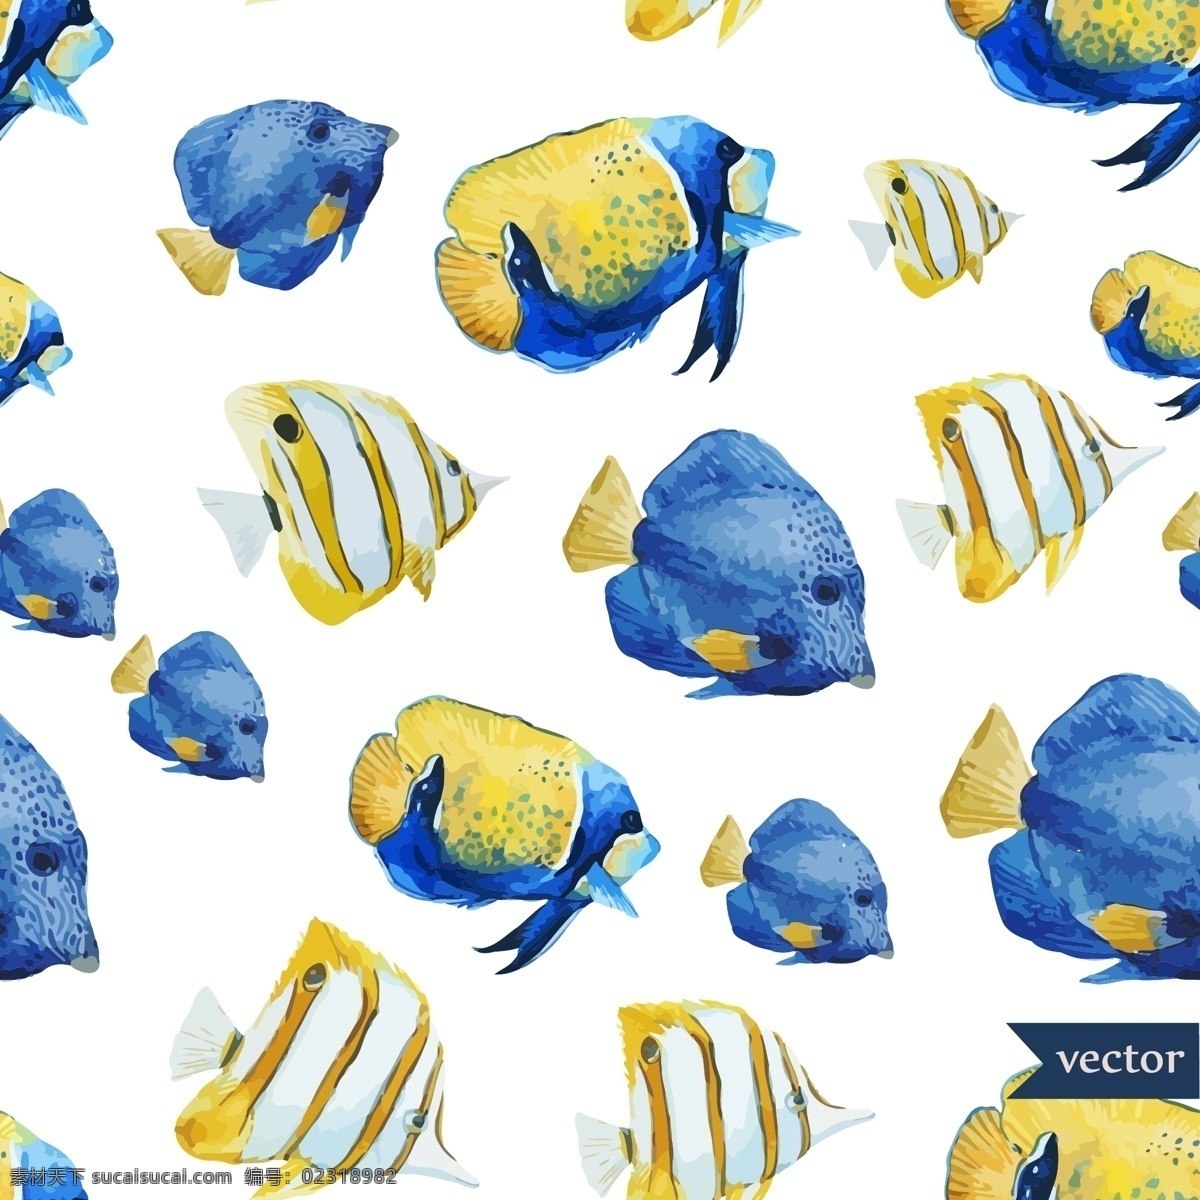 蓝色 小鱼 水彩 夏日 海洋 动物 元素 条纹 扁鱼 珊瑚鱼 创意 涂鸦 小清新 卡通 填充 插画 背景 海报 广告 包装 印刷 夏天